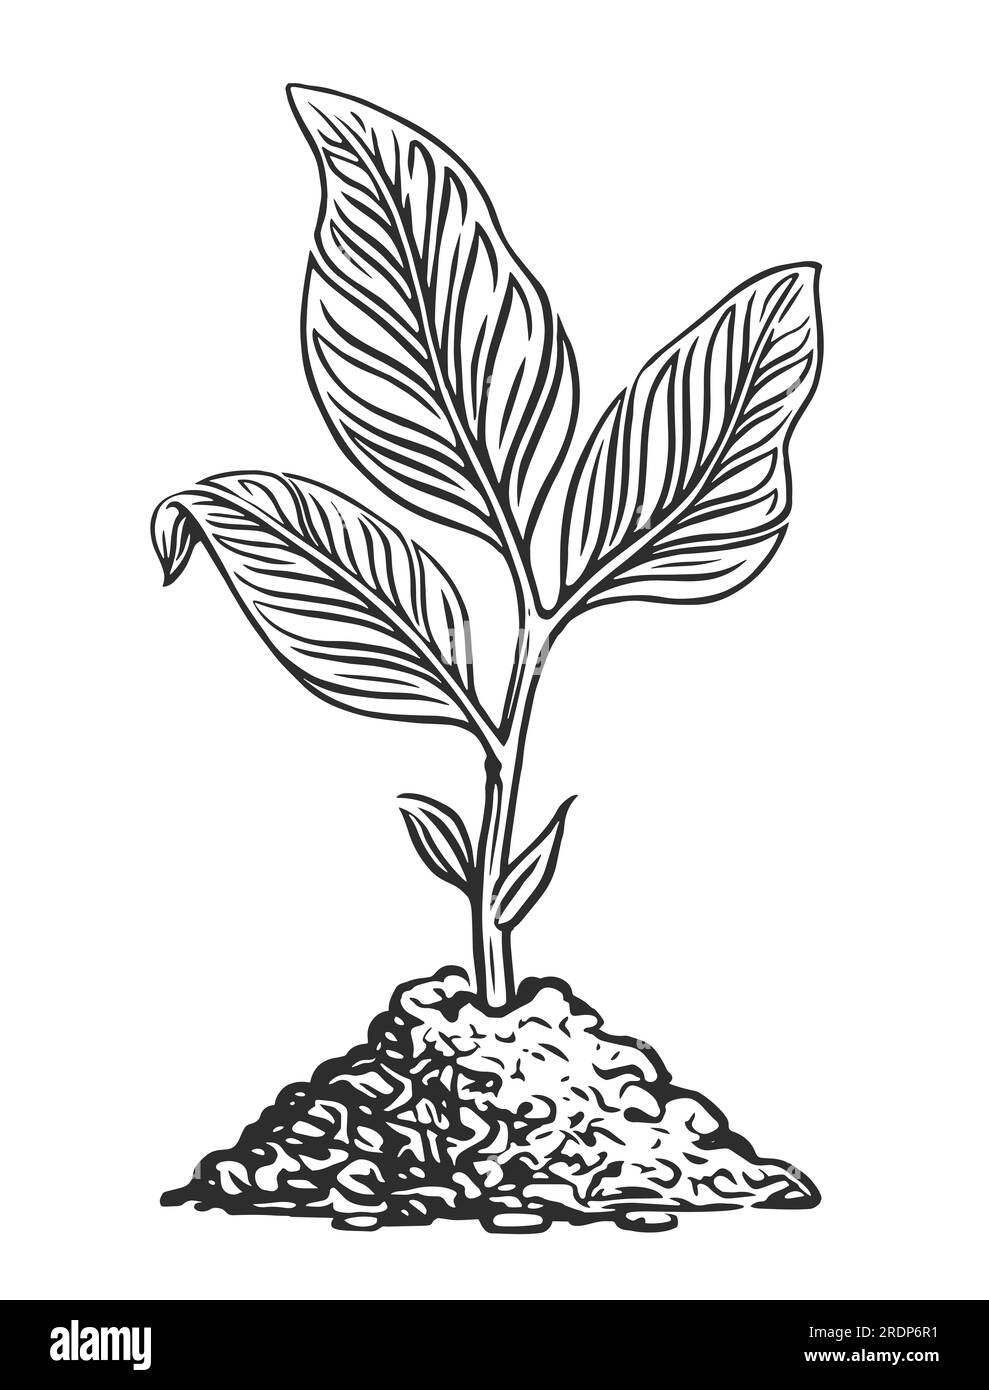 Germe avec des feuilles poussant du sol. Illustration de croquis de jeune plante Banque D'Images